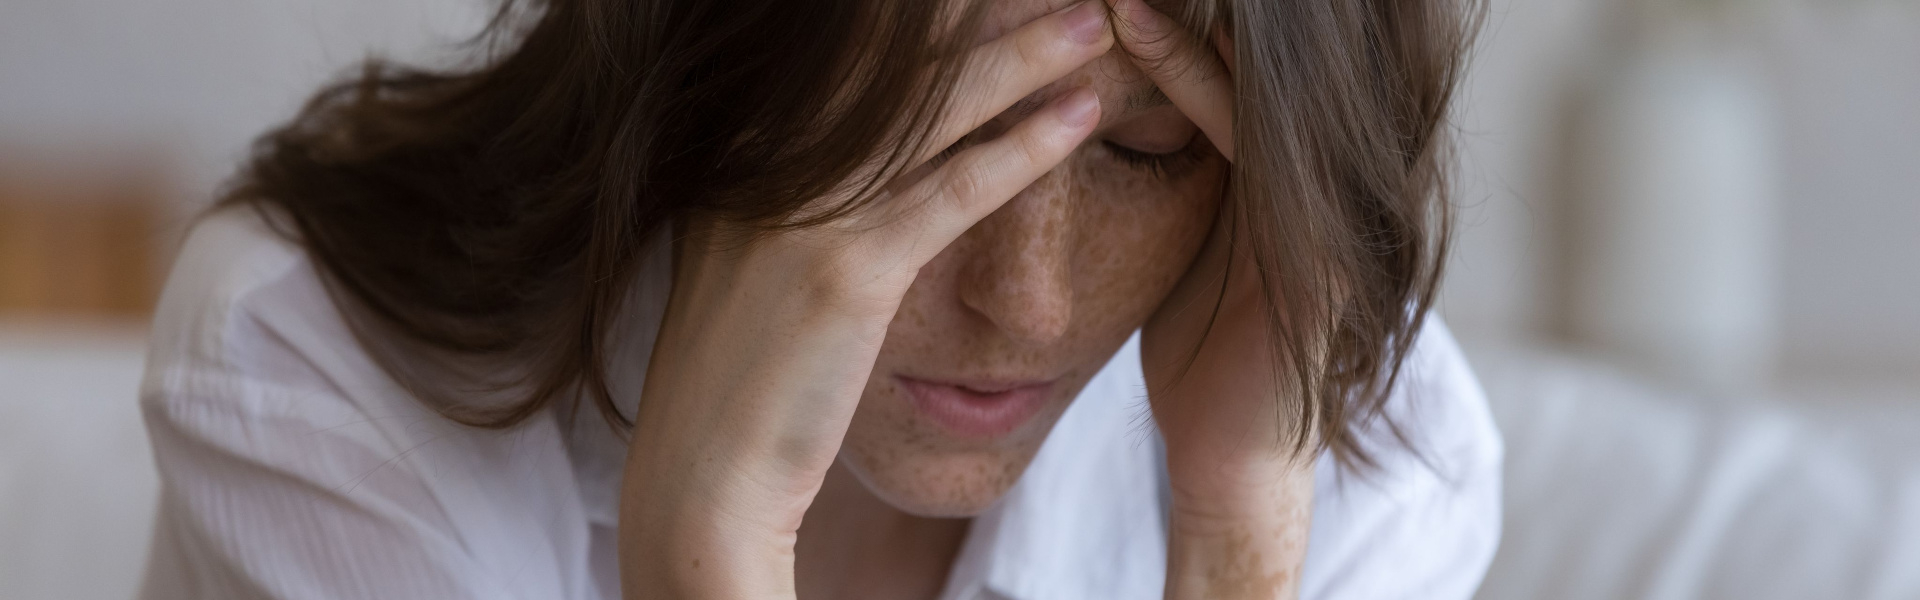 Migraine Management Explained Eyedeology